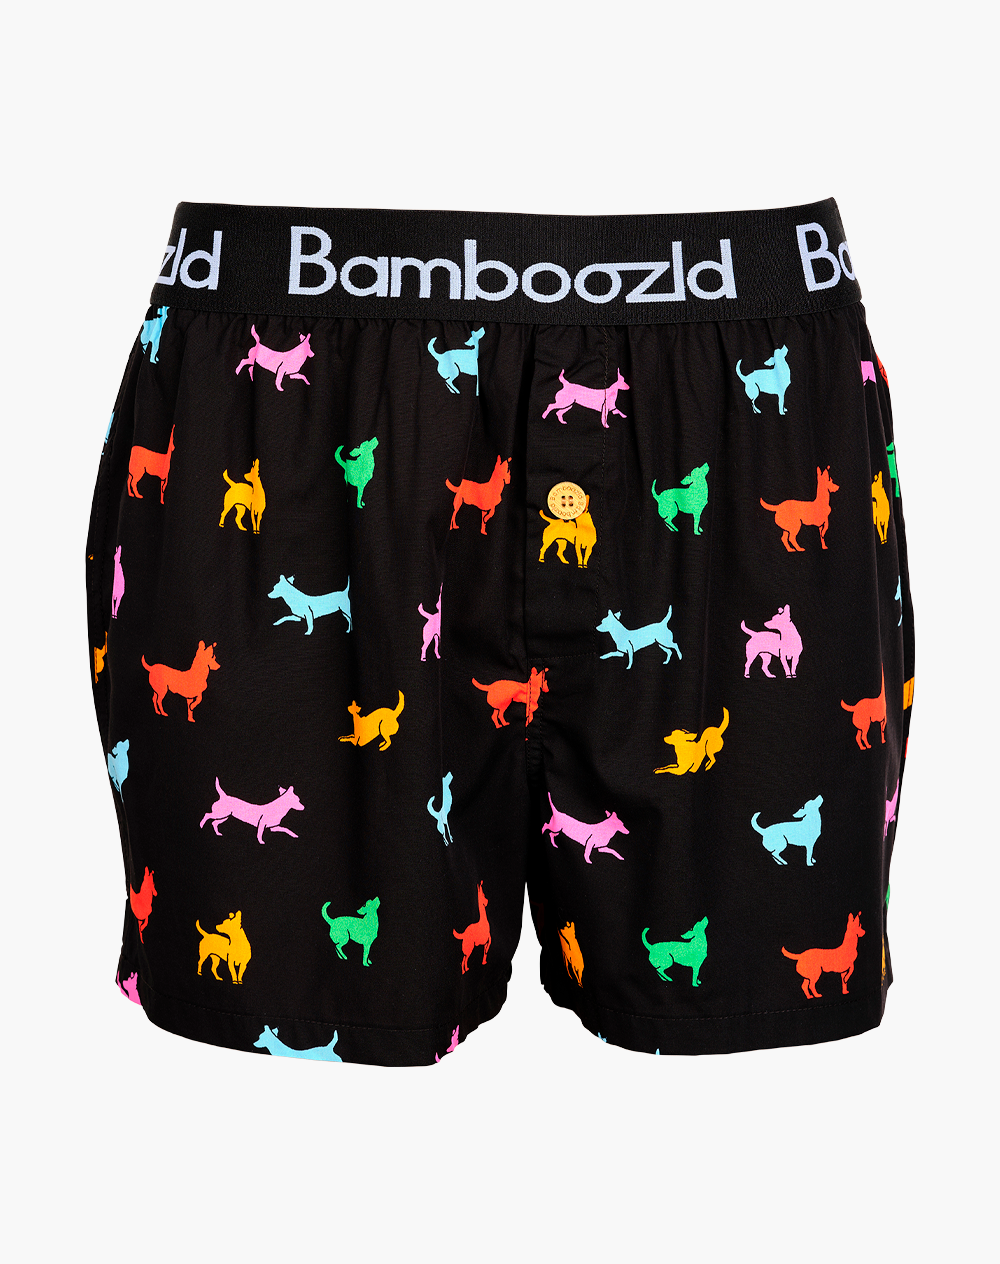 Men's Bamboo Boxer Shorts - Dog Gone Bad